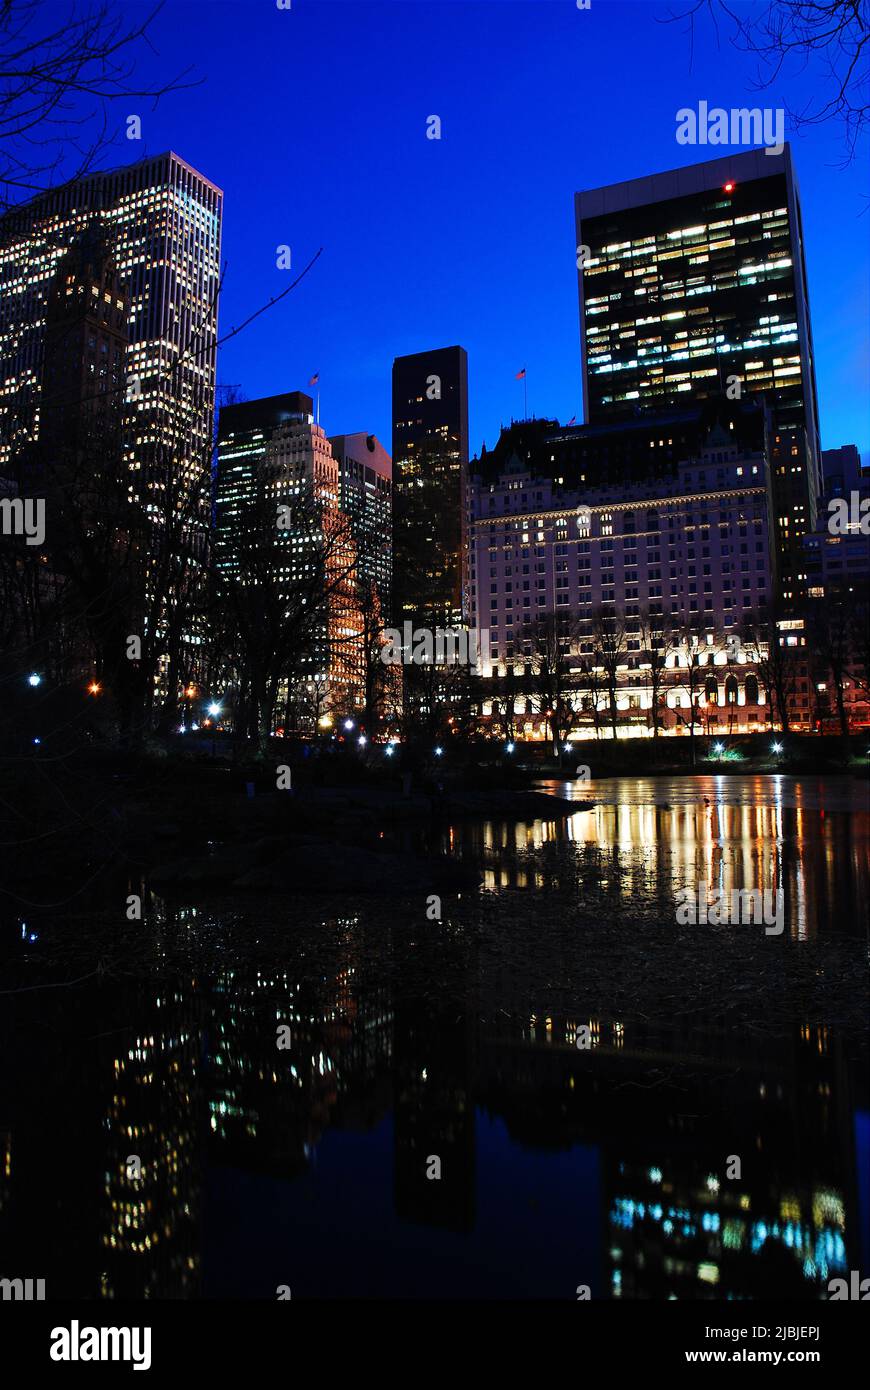 Les lumières de Manhattan se reflètent dans les eaux de l'étang dans le Central Park de New York lors d'une nuit d'hiver claire Banque D'Images